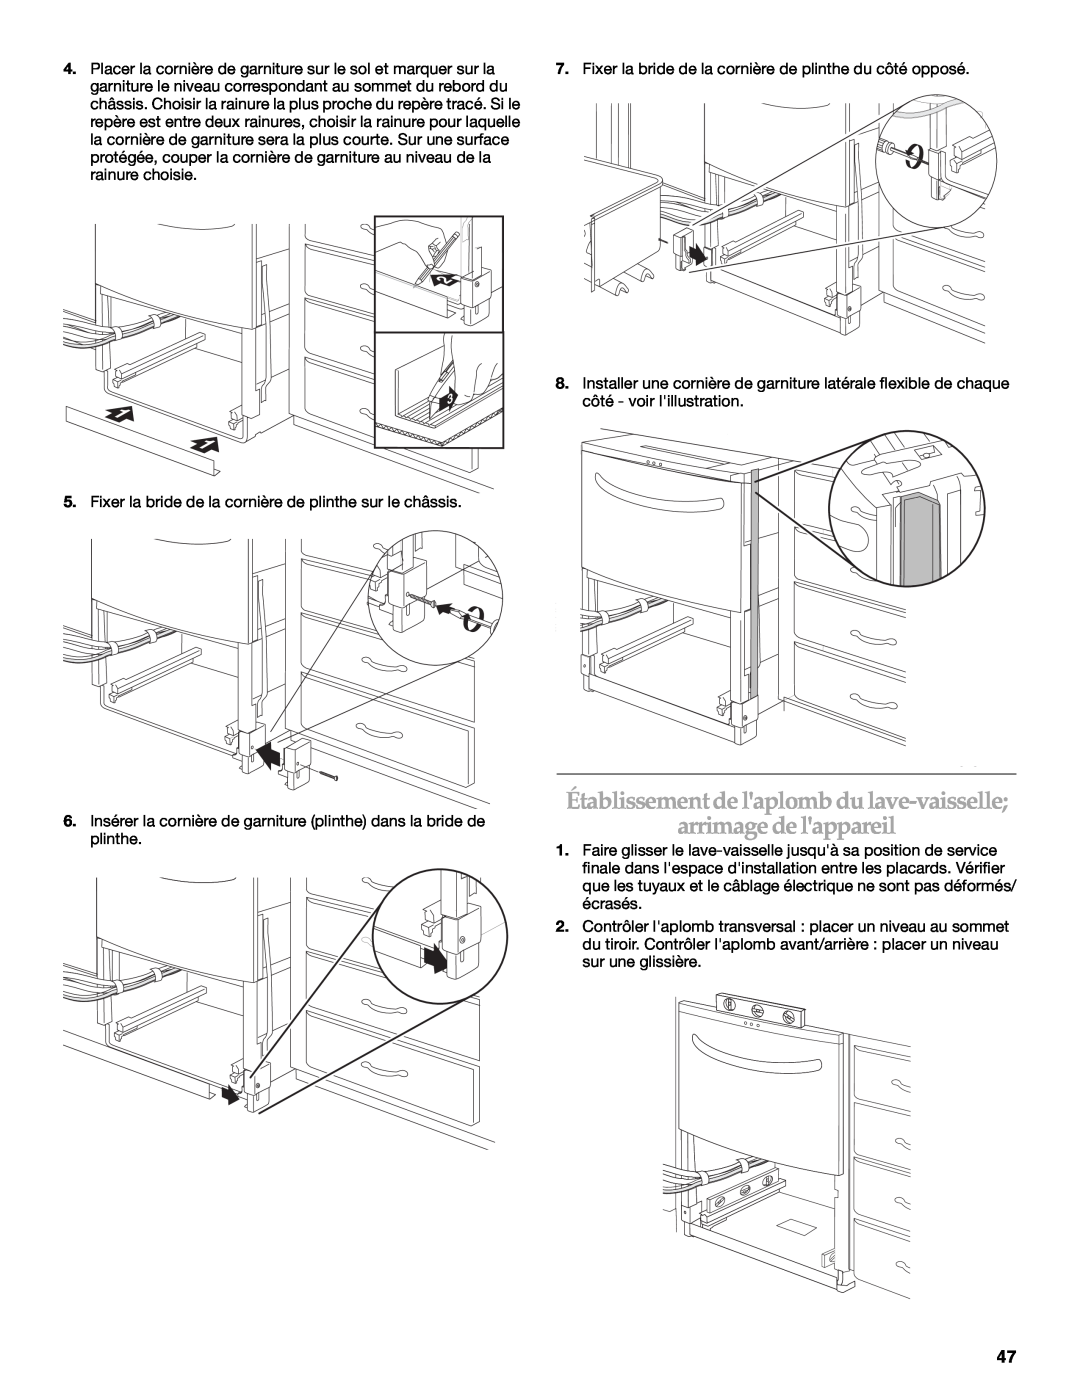 KitchenAid W10118037B installation instructions Établissement de laplomb du lave-vaisselle arrimage de lappareil 